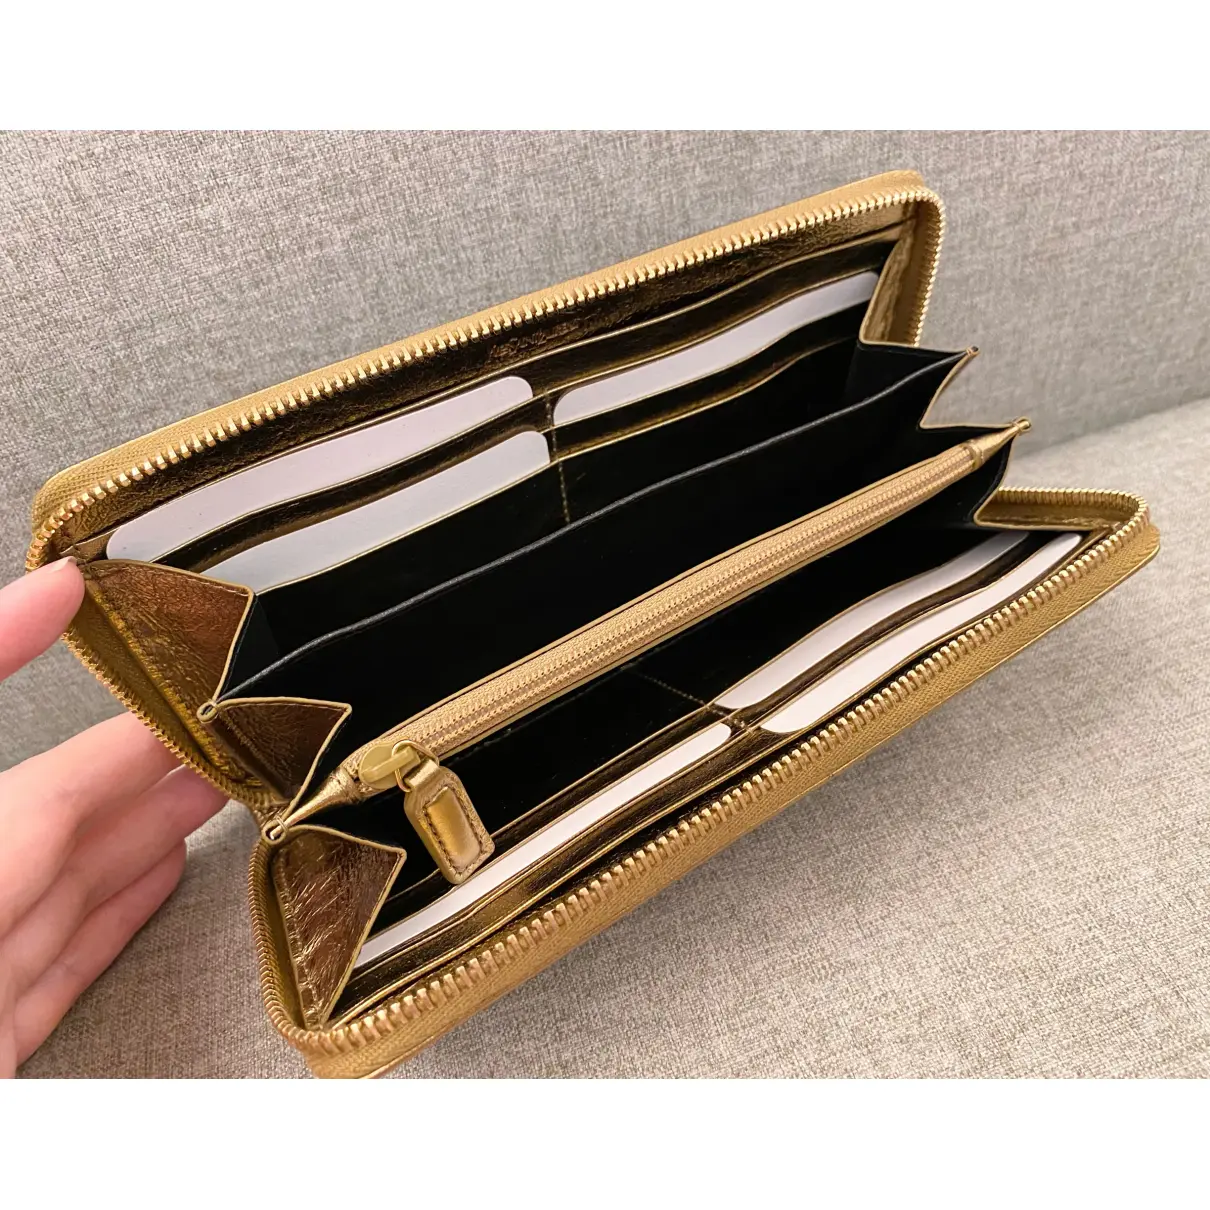 Belle de Jour leather wallet Yves Saint Laurent